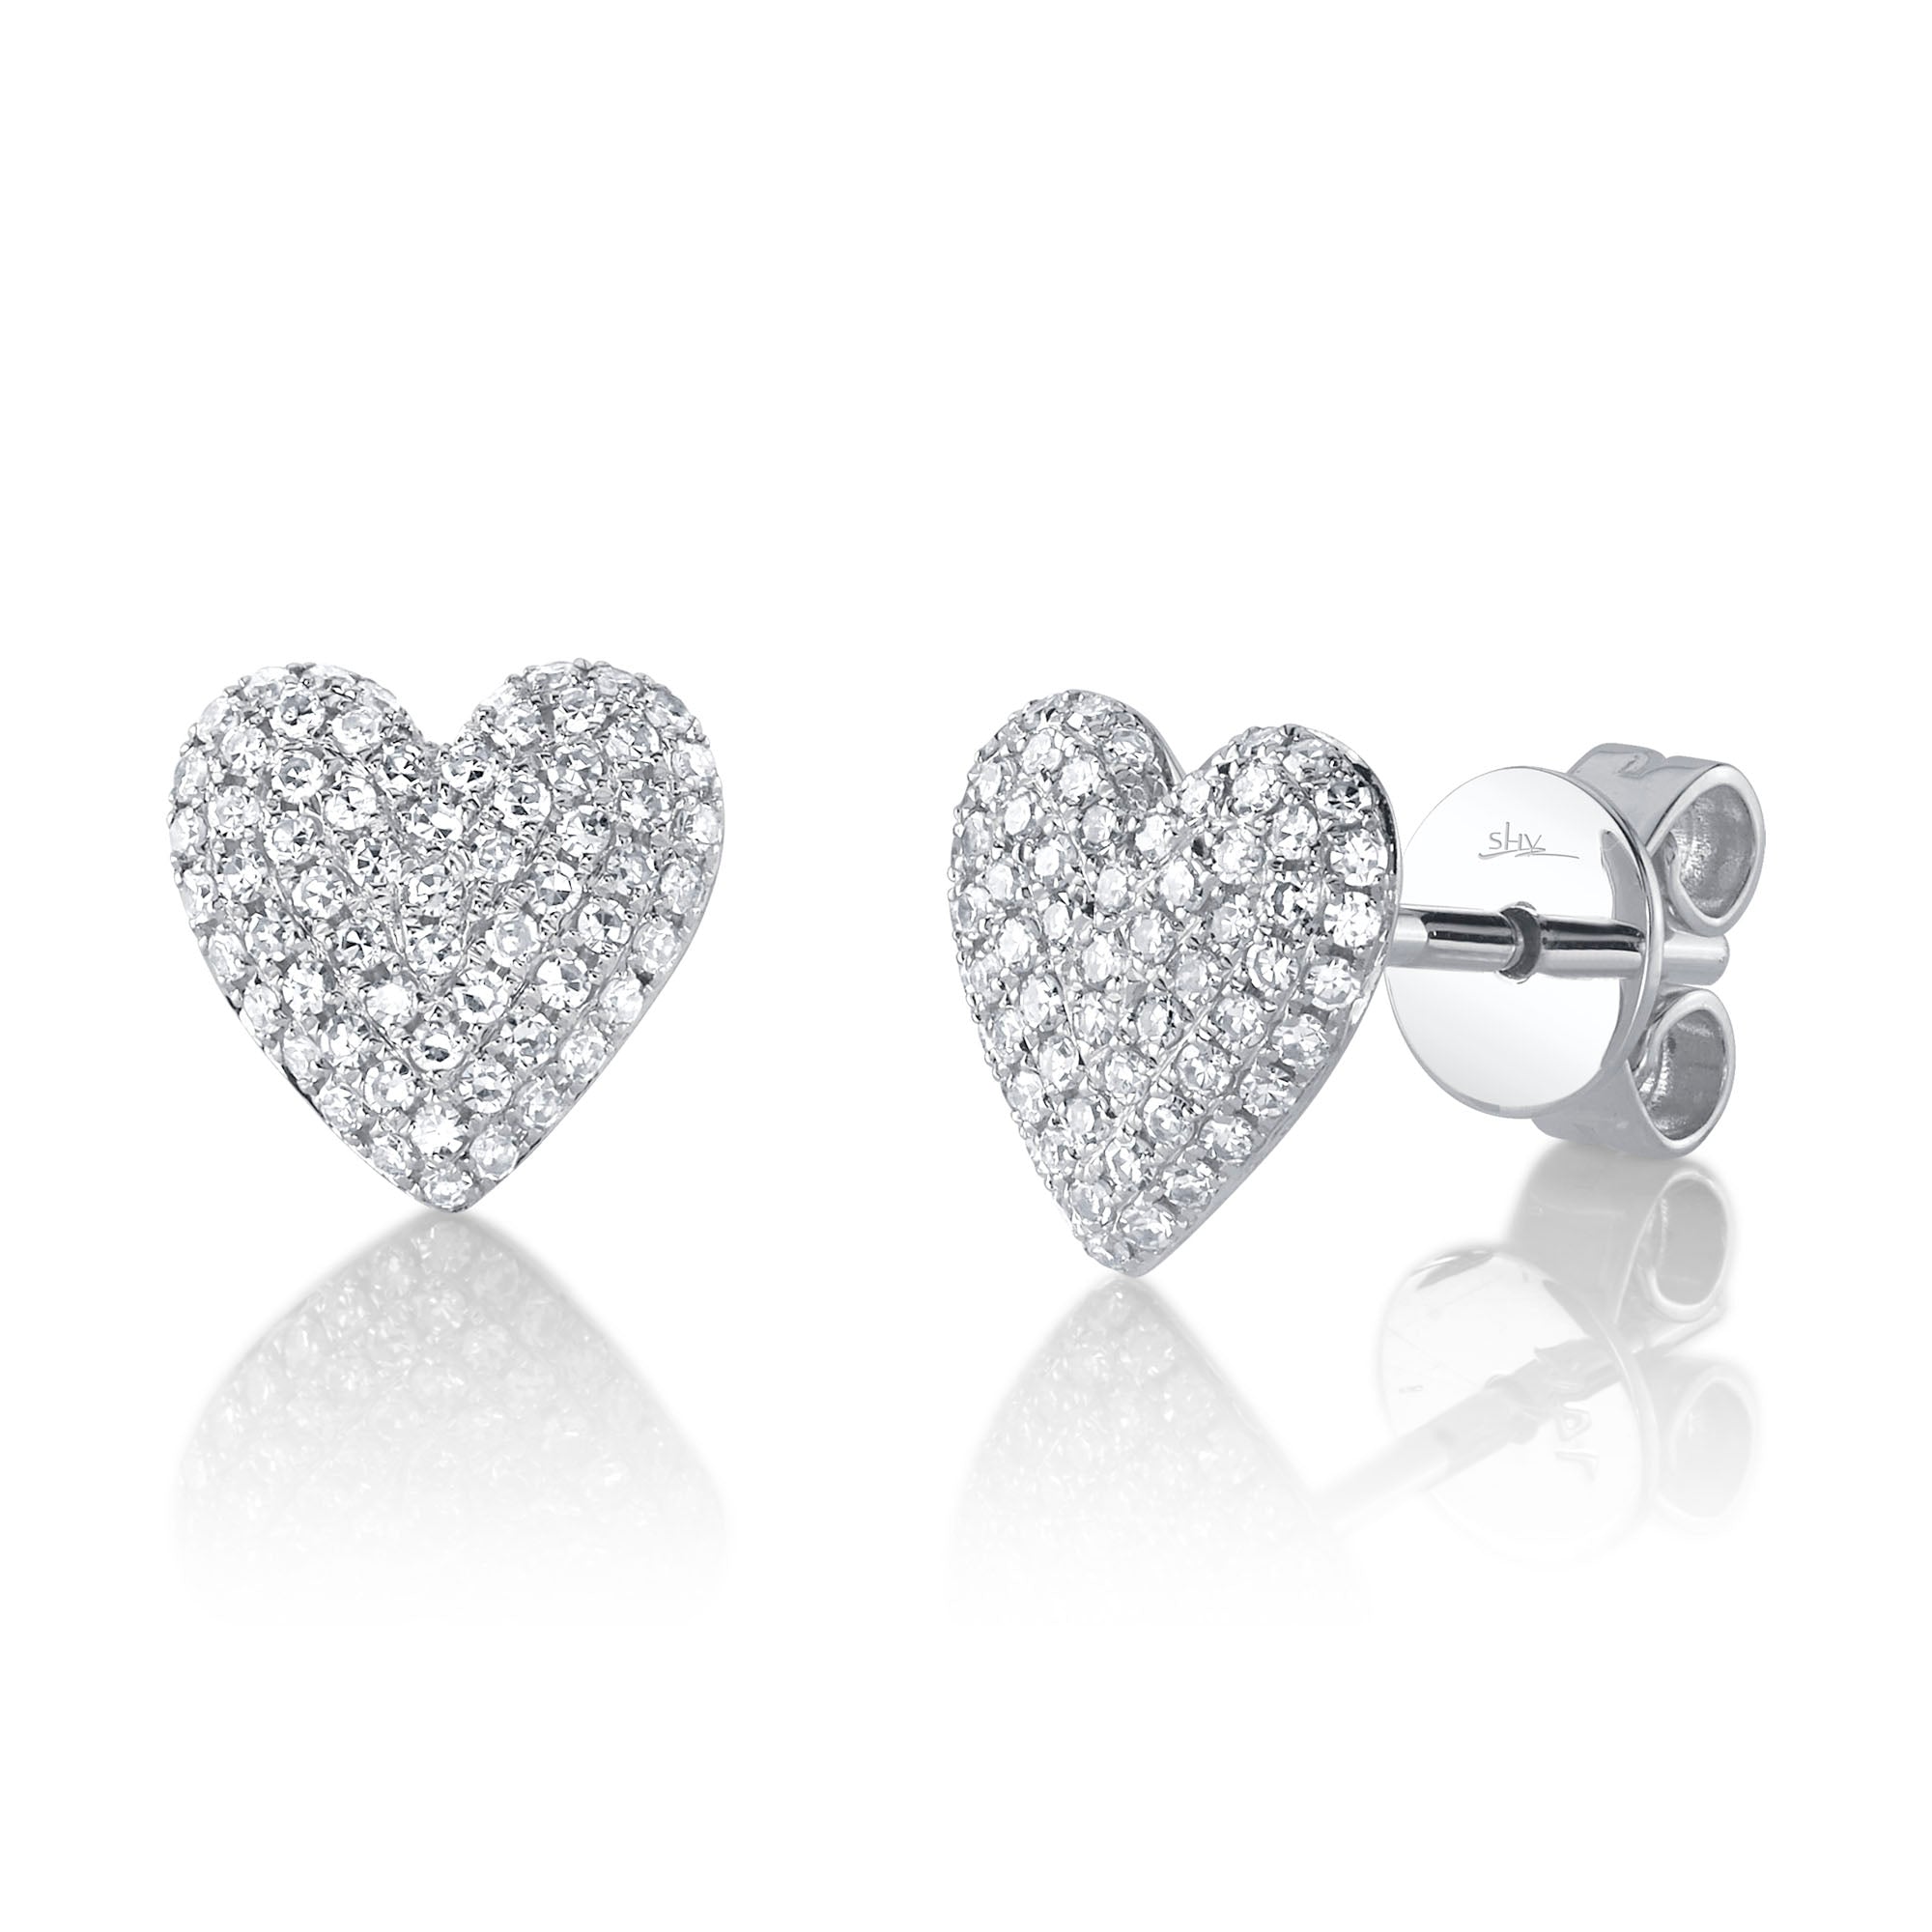 White Gold Diamond Pave Heart Stud Earrings Earrings Gift Giving